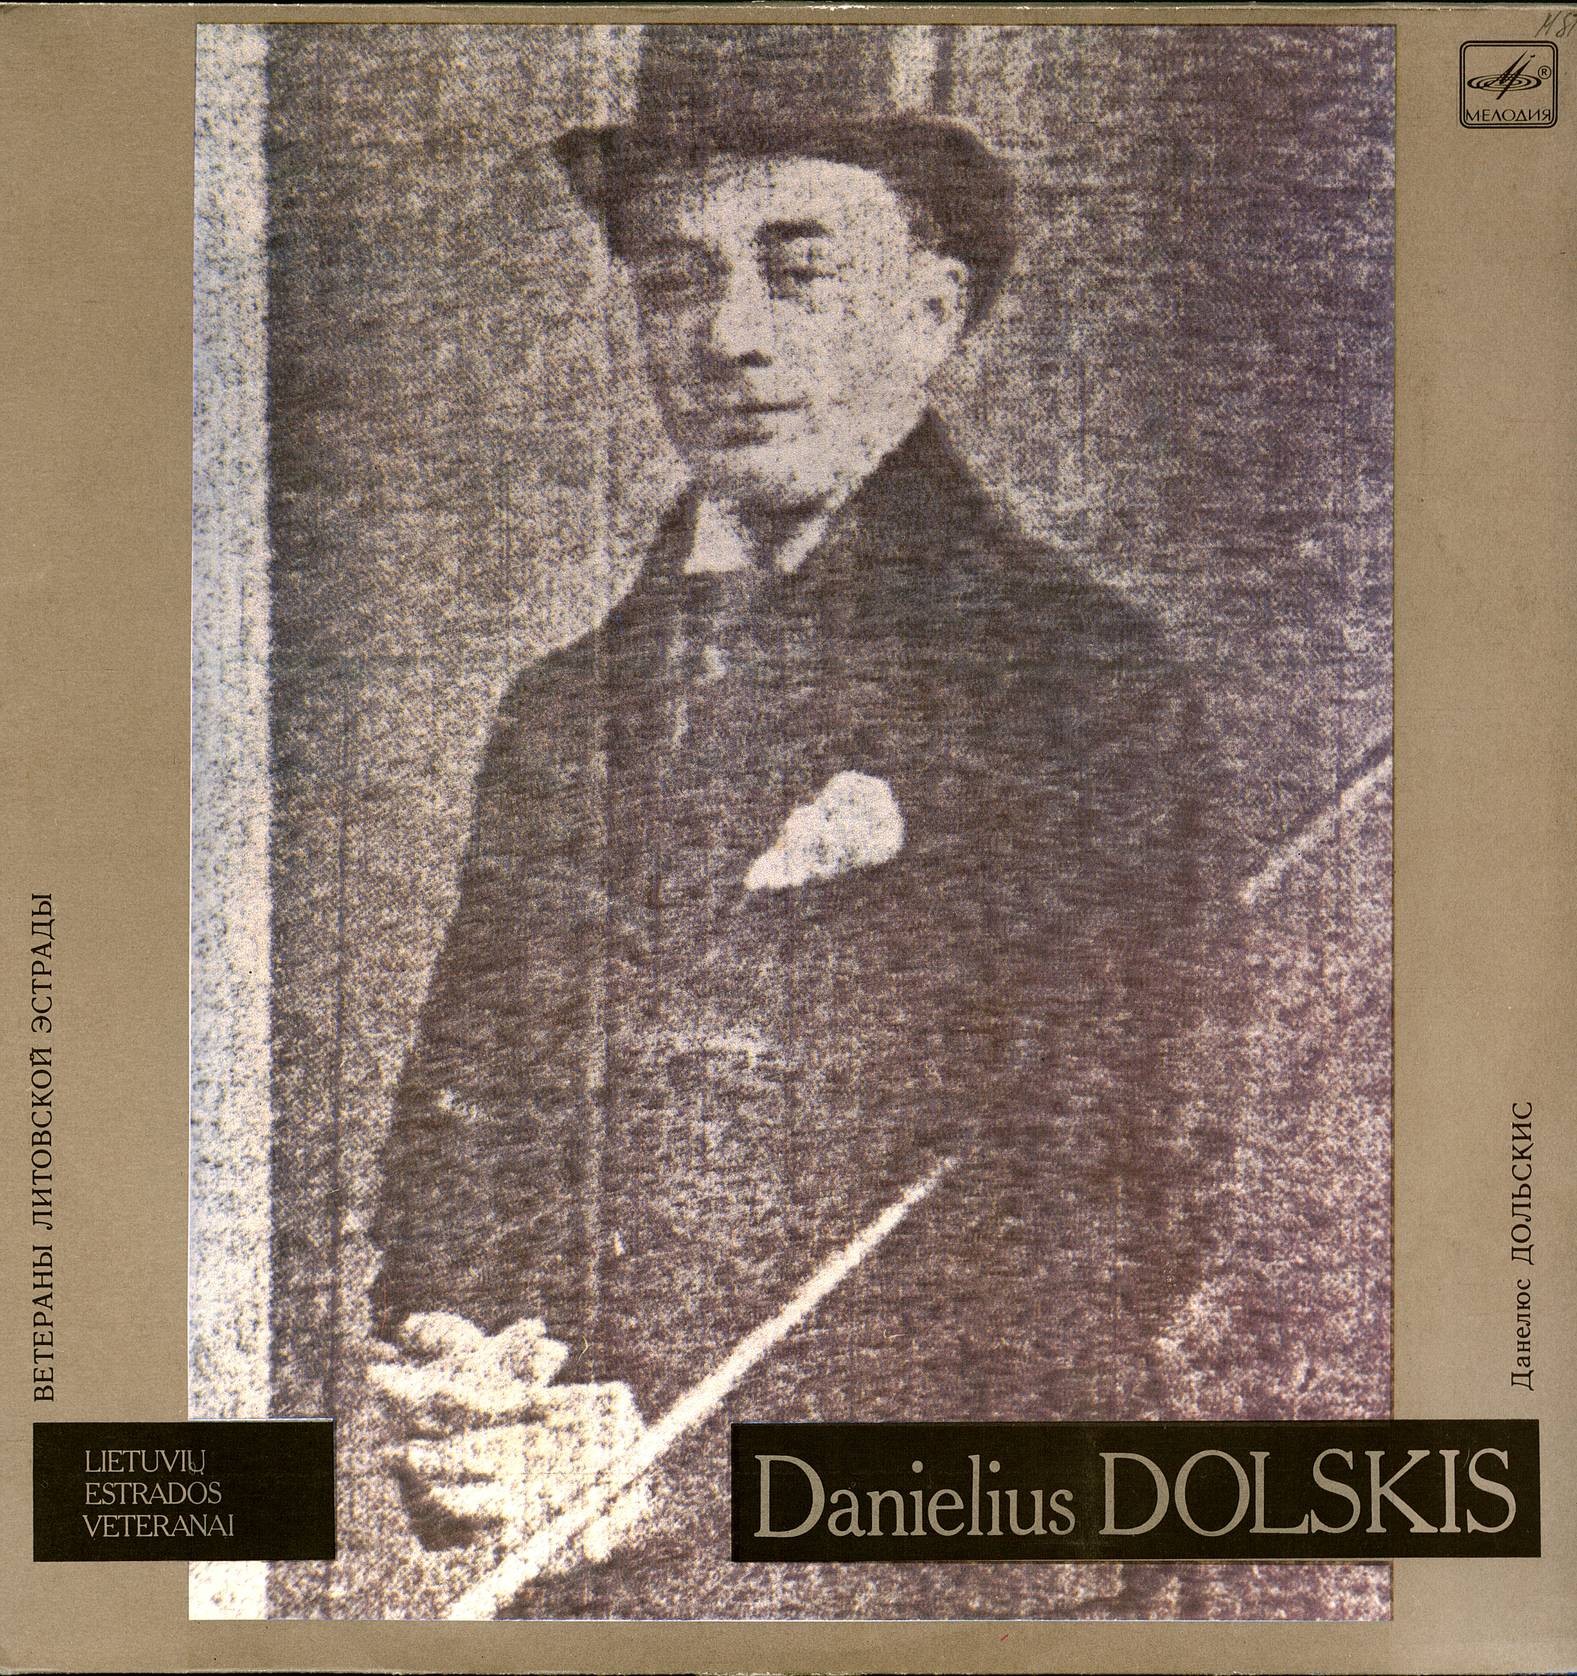 Данелюс ДОЛЬСКИС (Danielius Dolskis). Ветераны литовской эстрады